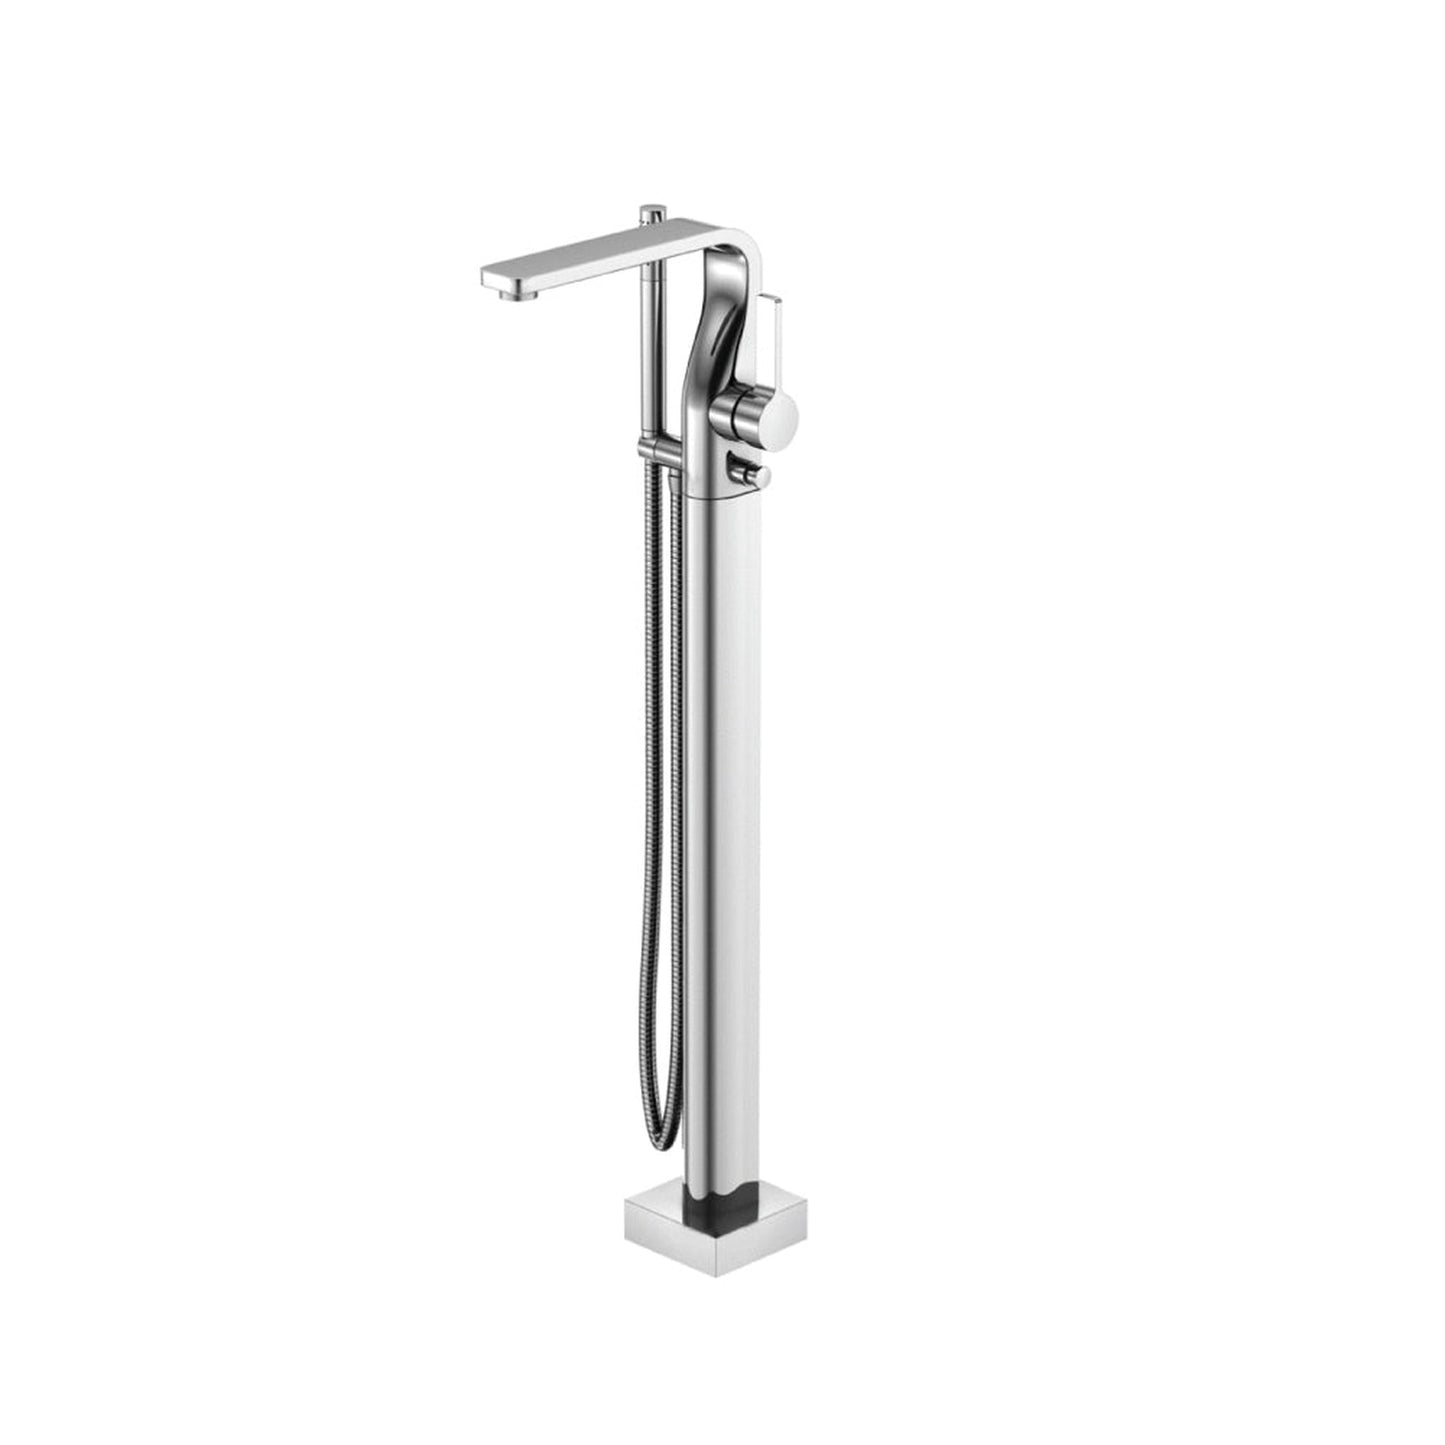 Isenberg Serie 260 Freestanding Floor Mount Bathtub / Tub Filler With Hand Shower in Matte Black